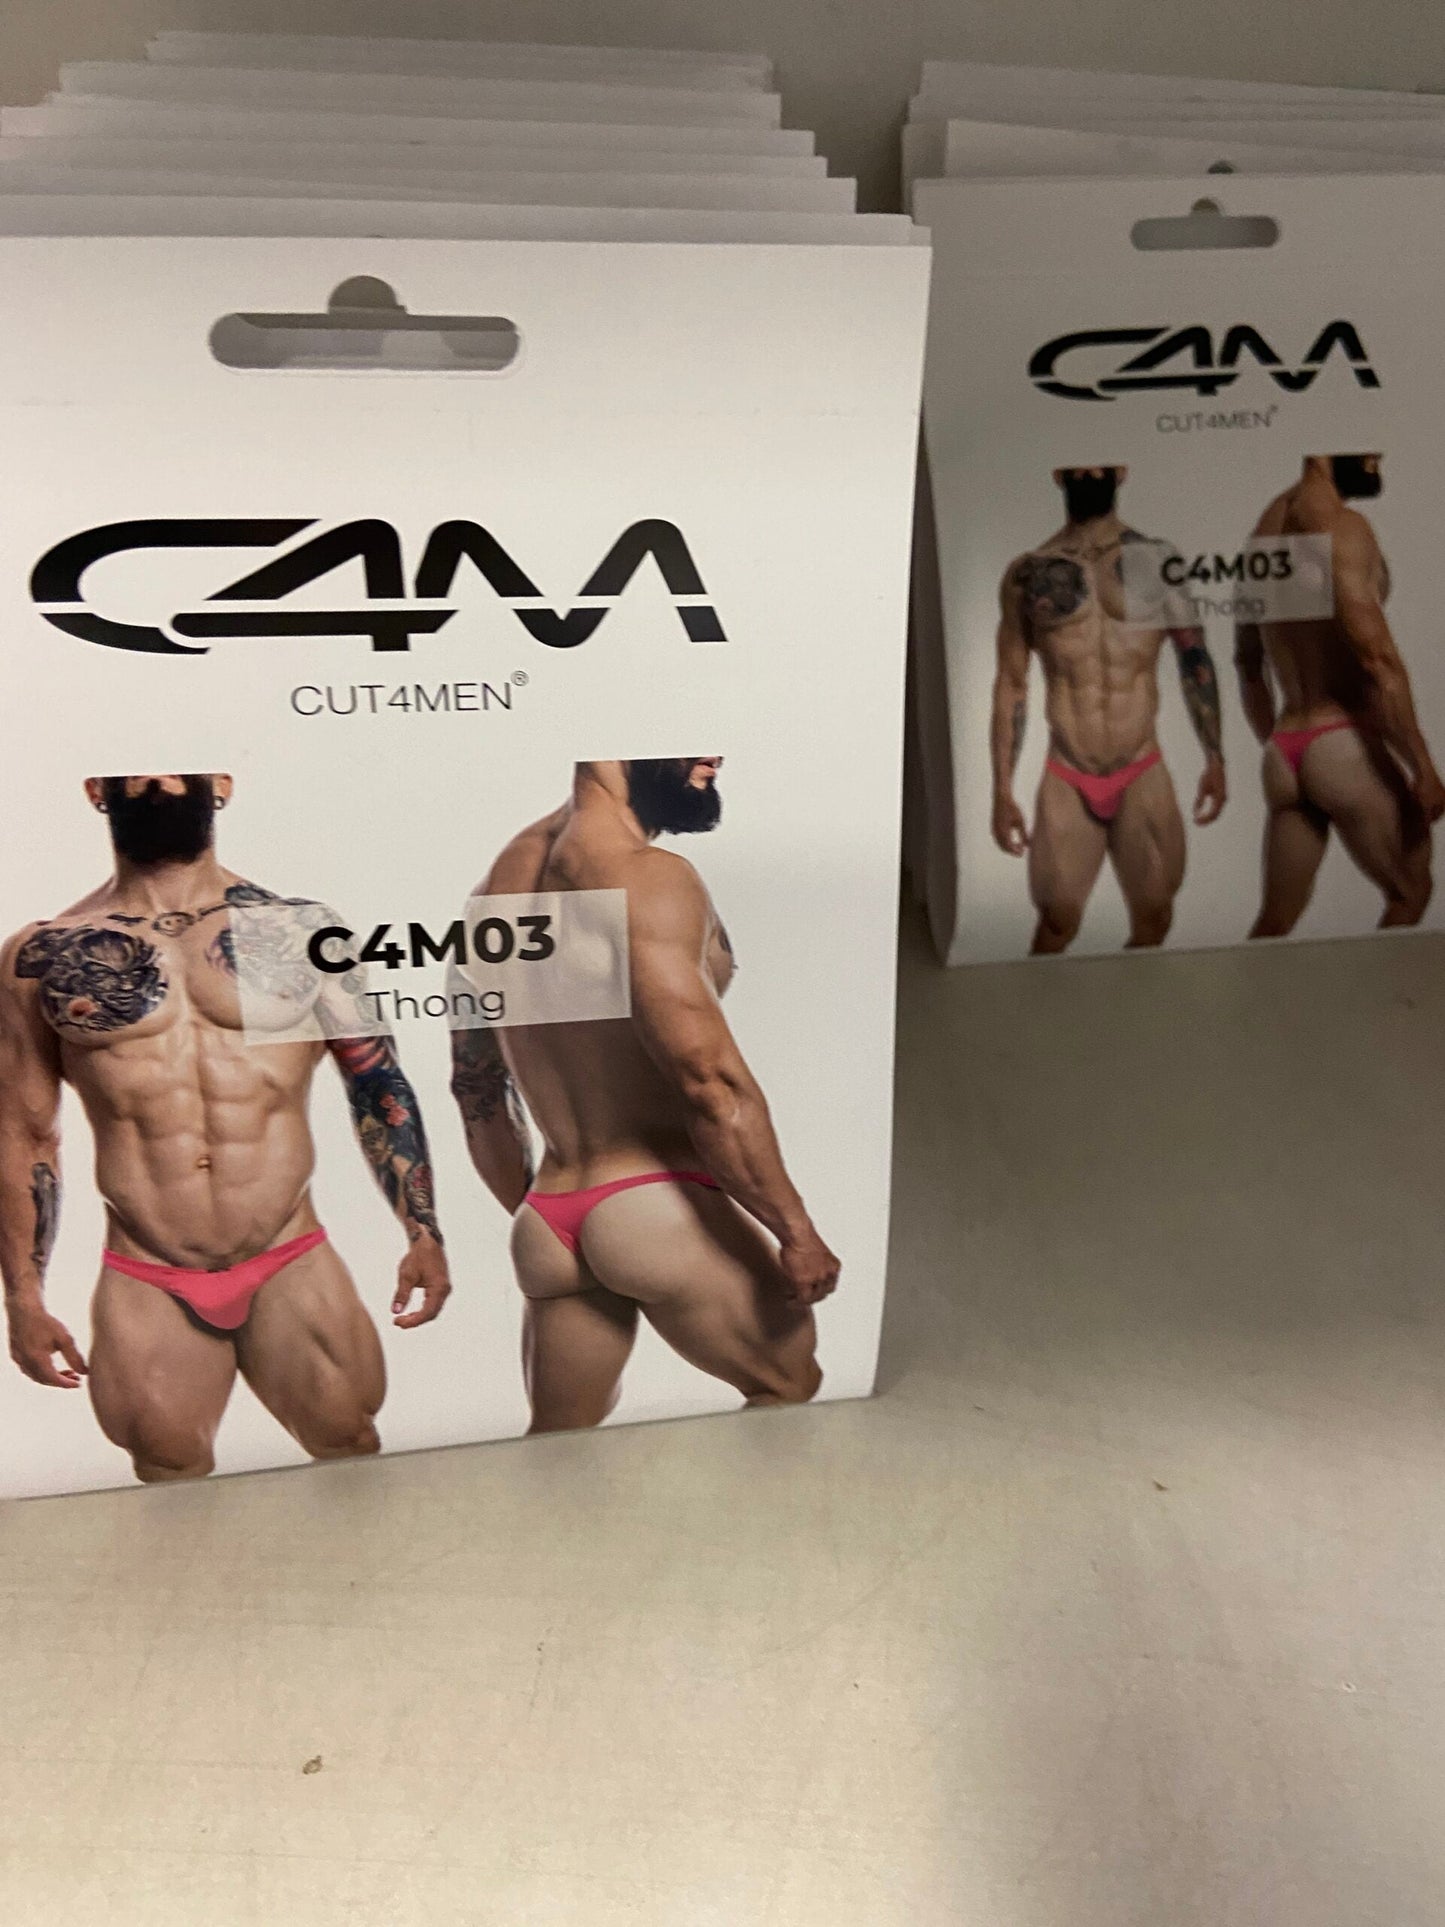 CUT4MEN - C4M11 - Brazilian Brief Men Underwear - 12 Pieces - 3 Colours - 4 Sizes - 1 Piece